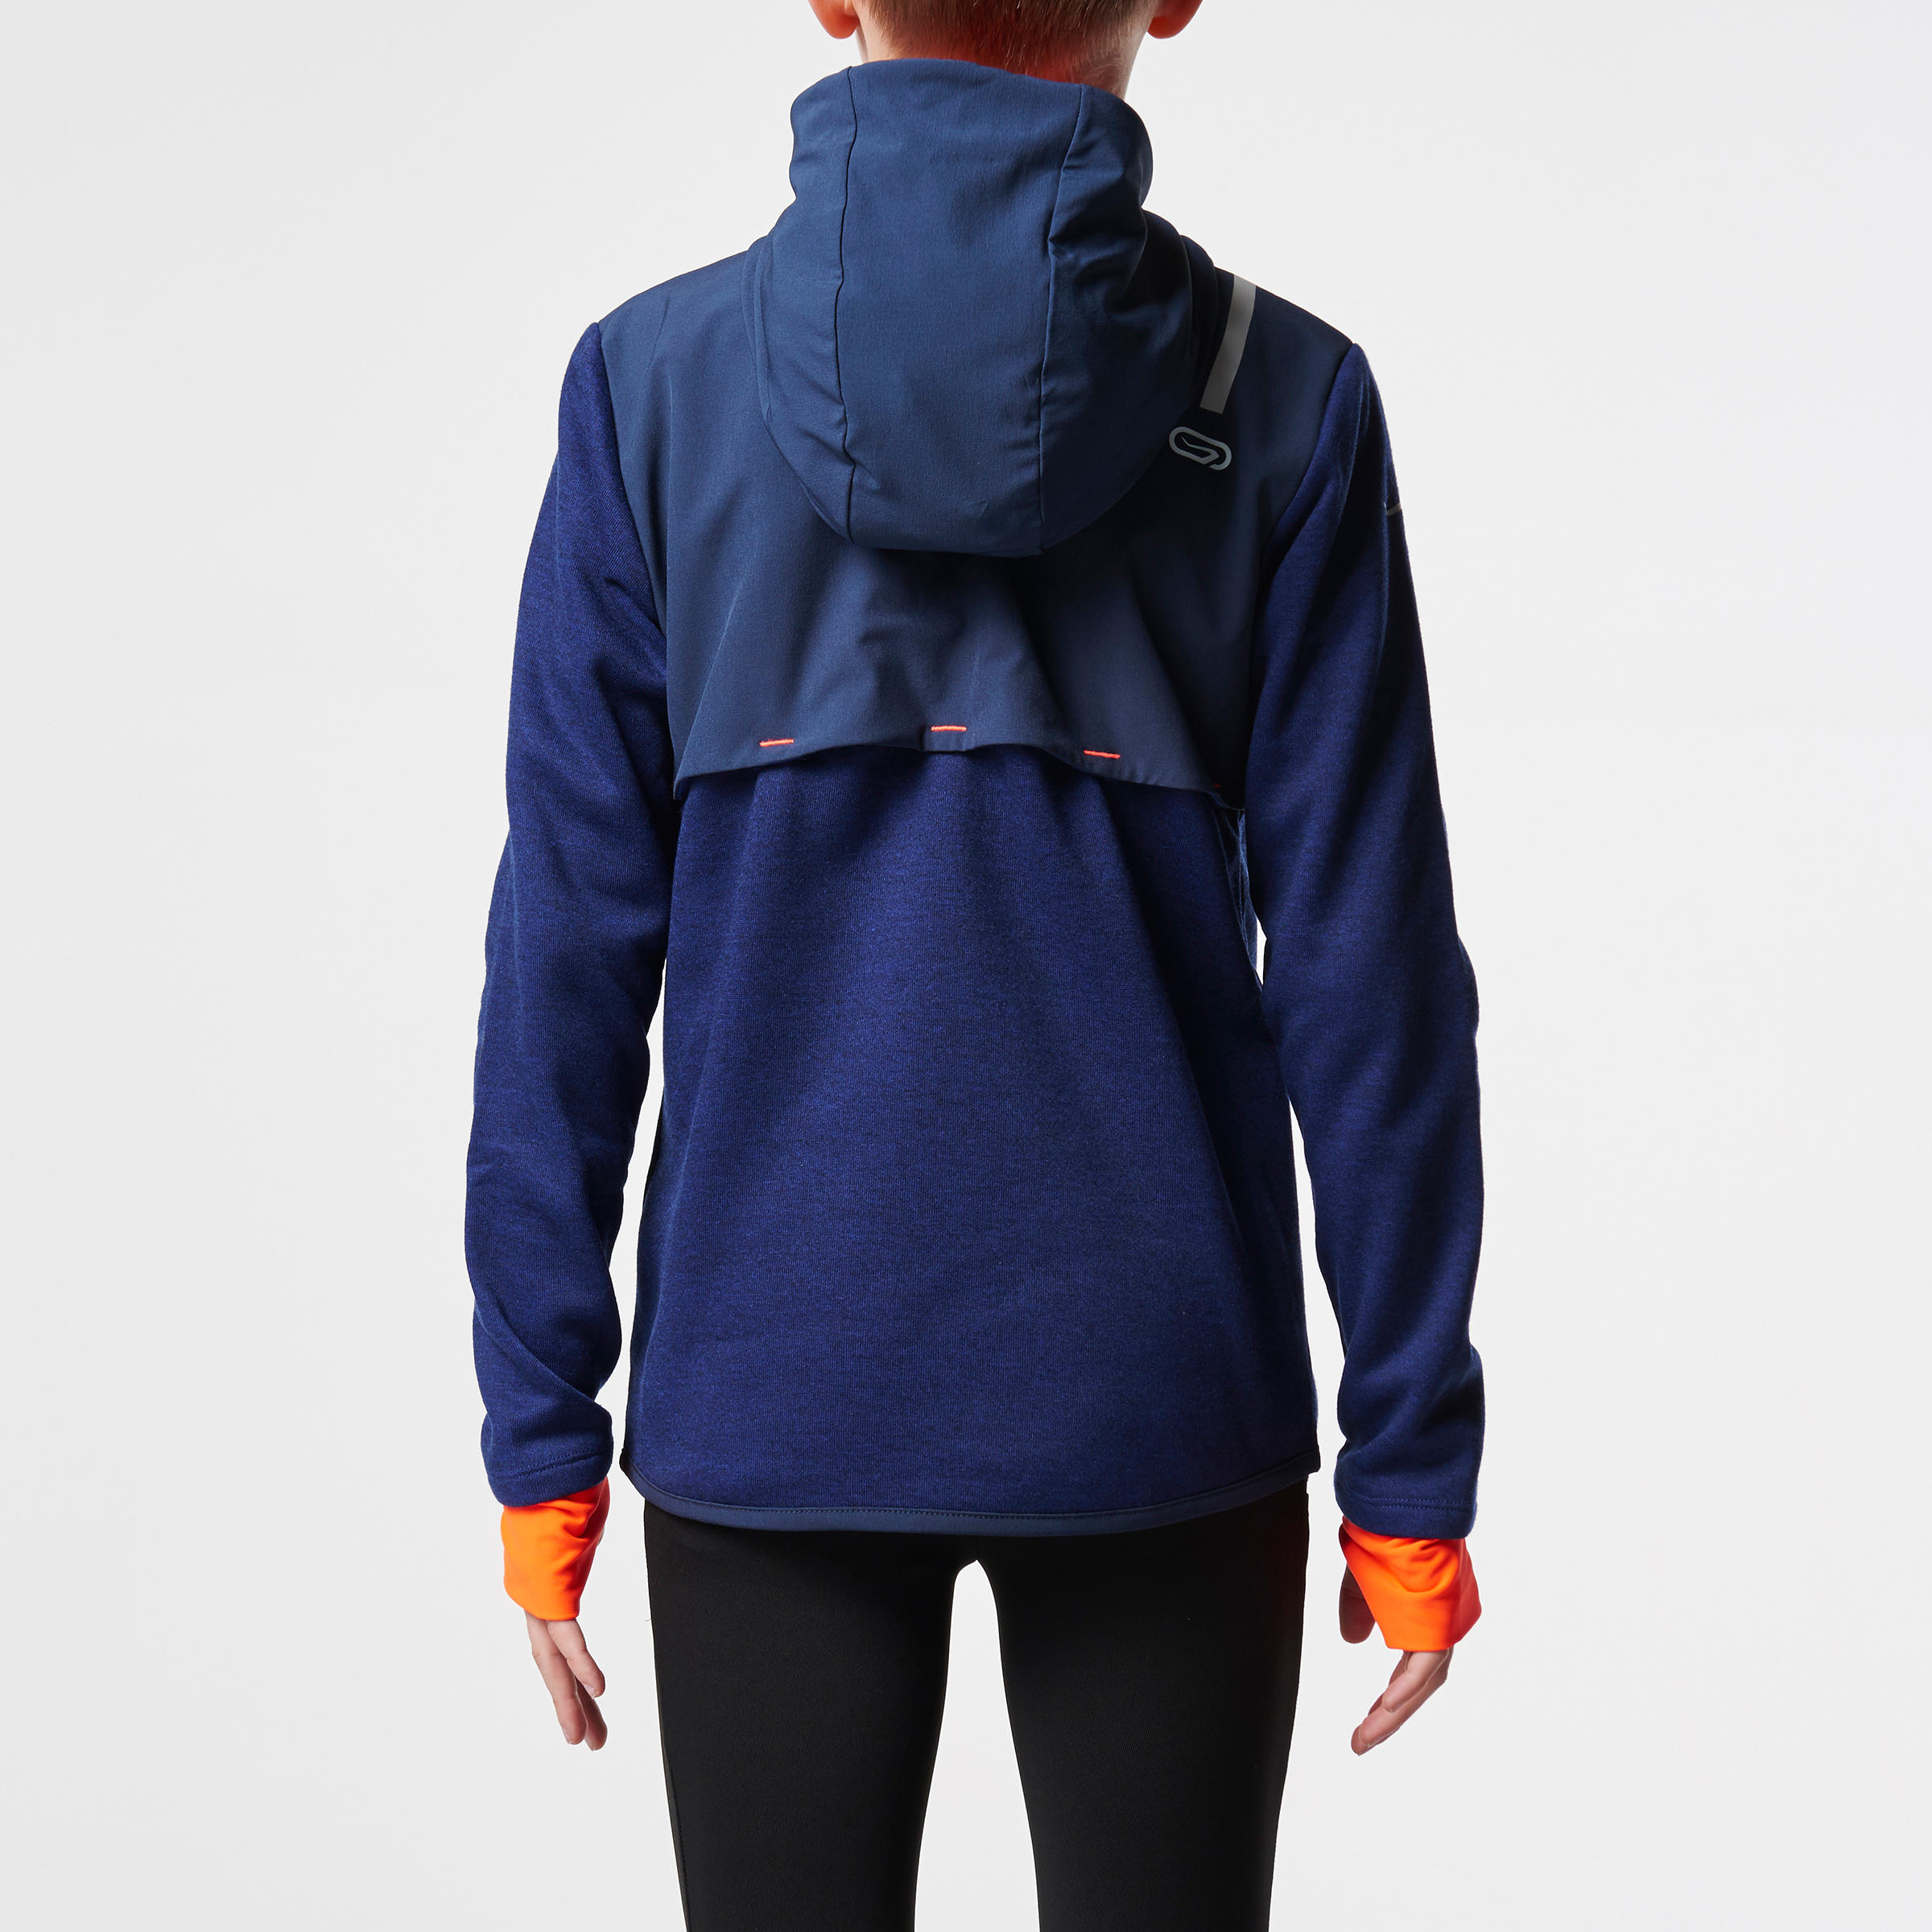 Elio Children's Running Hooded Jersey - Blue/Orange
 5/15